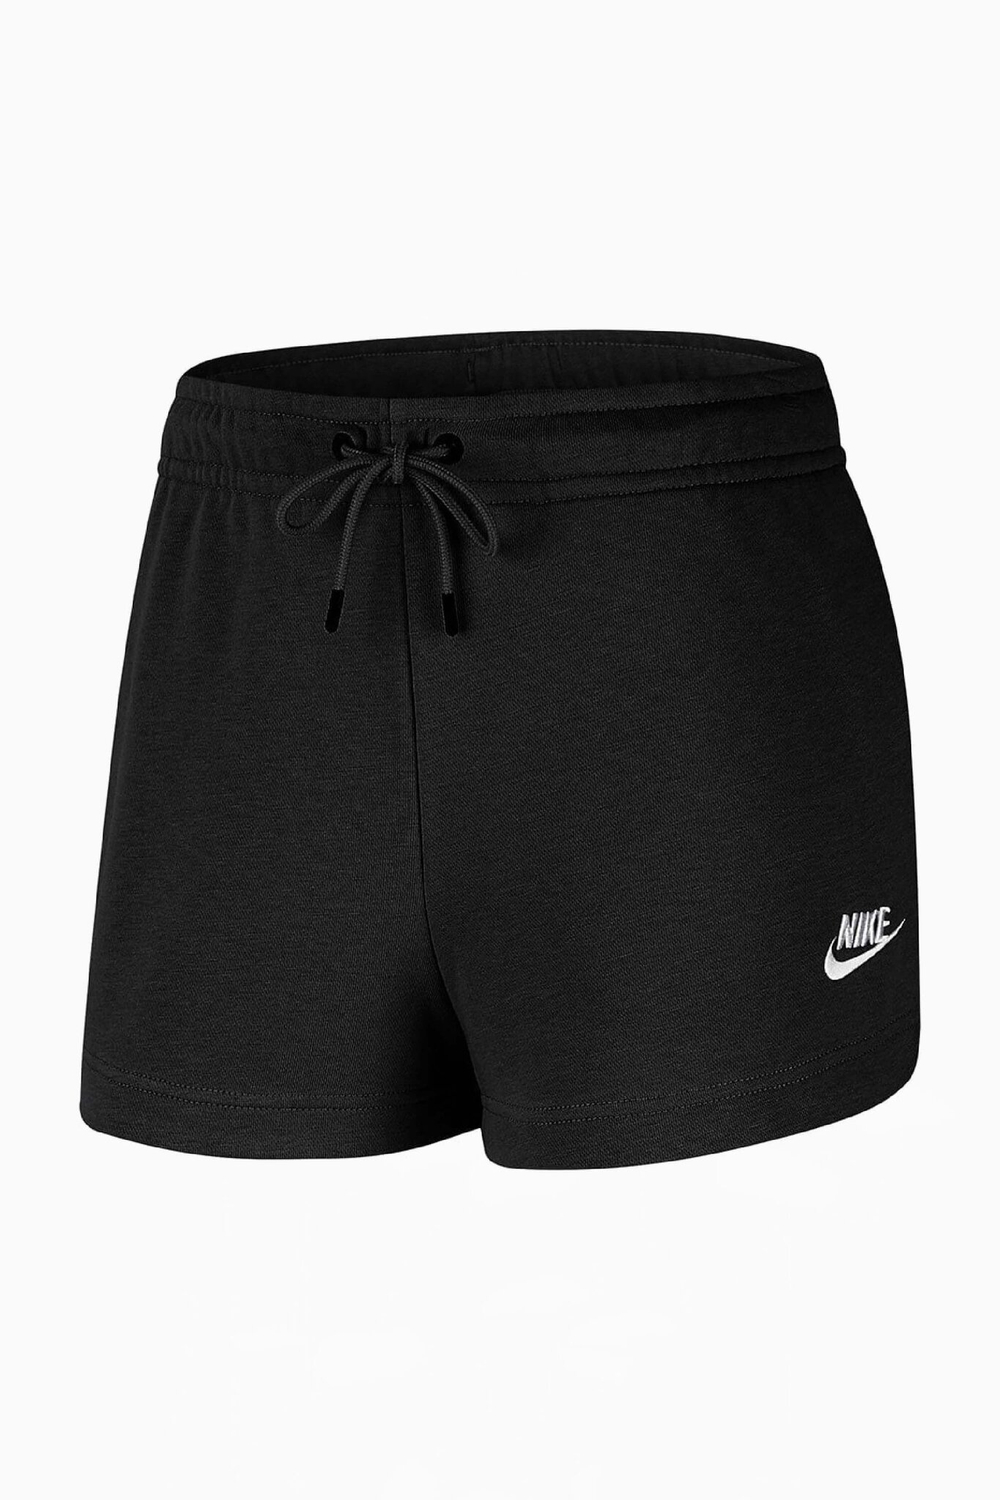 Шорты Nike Sportswear Essentials Женские